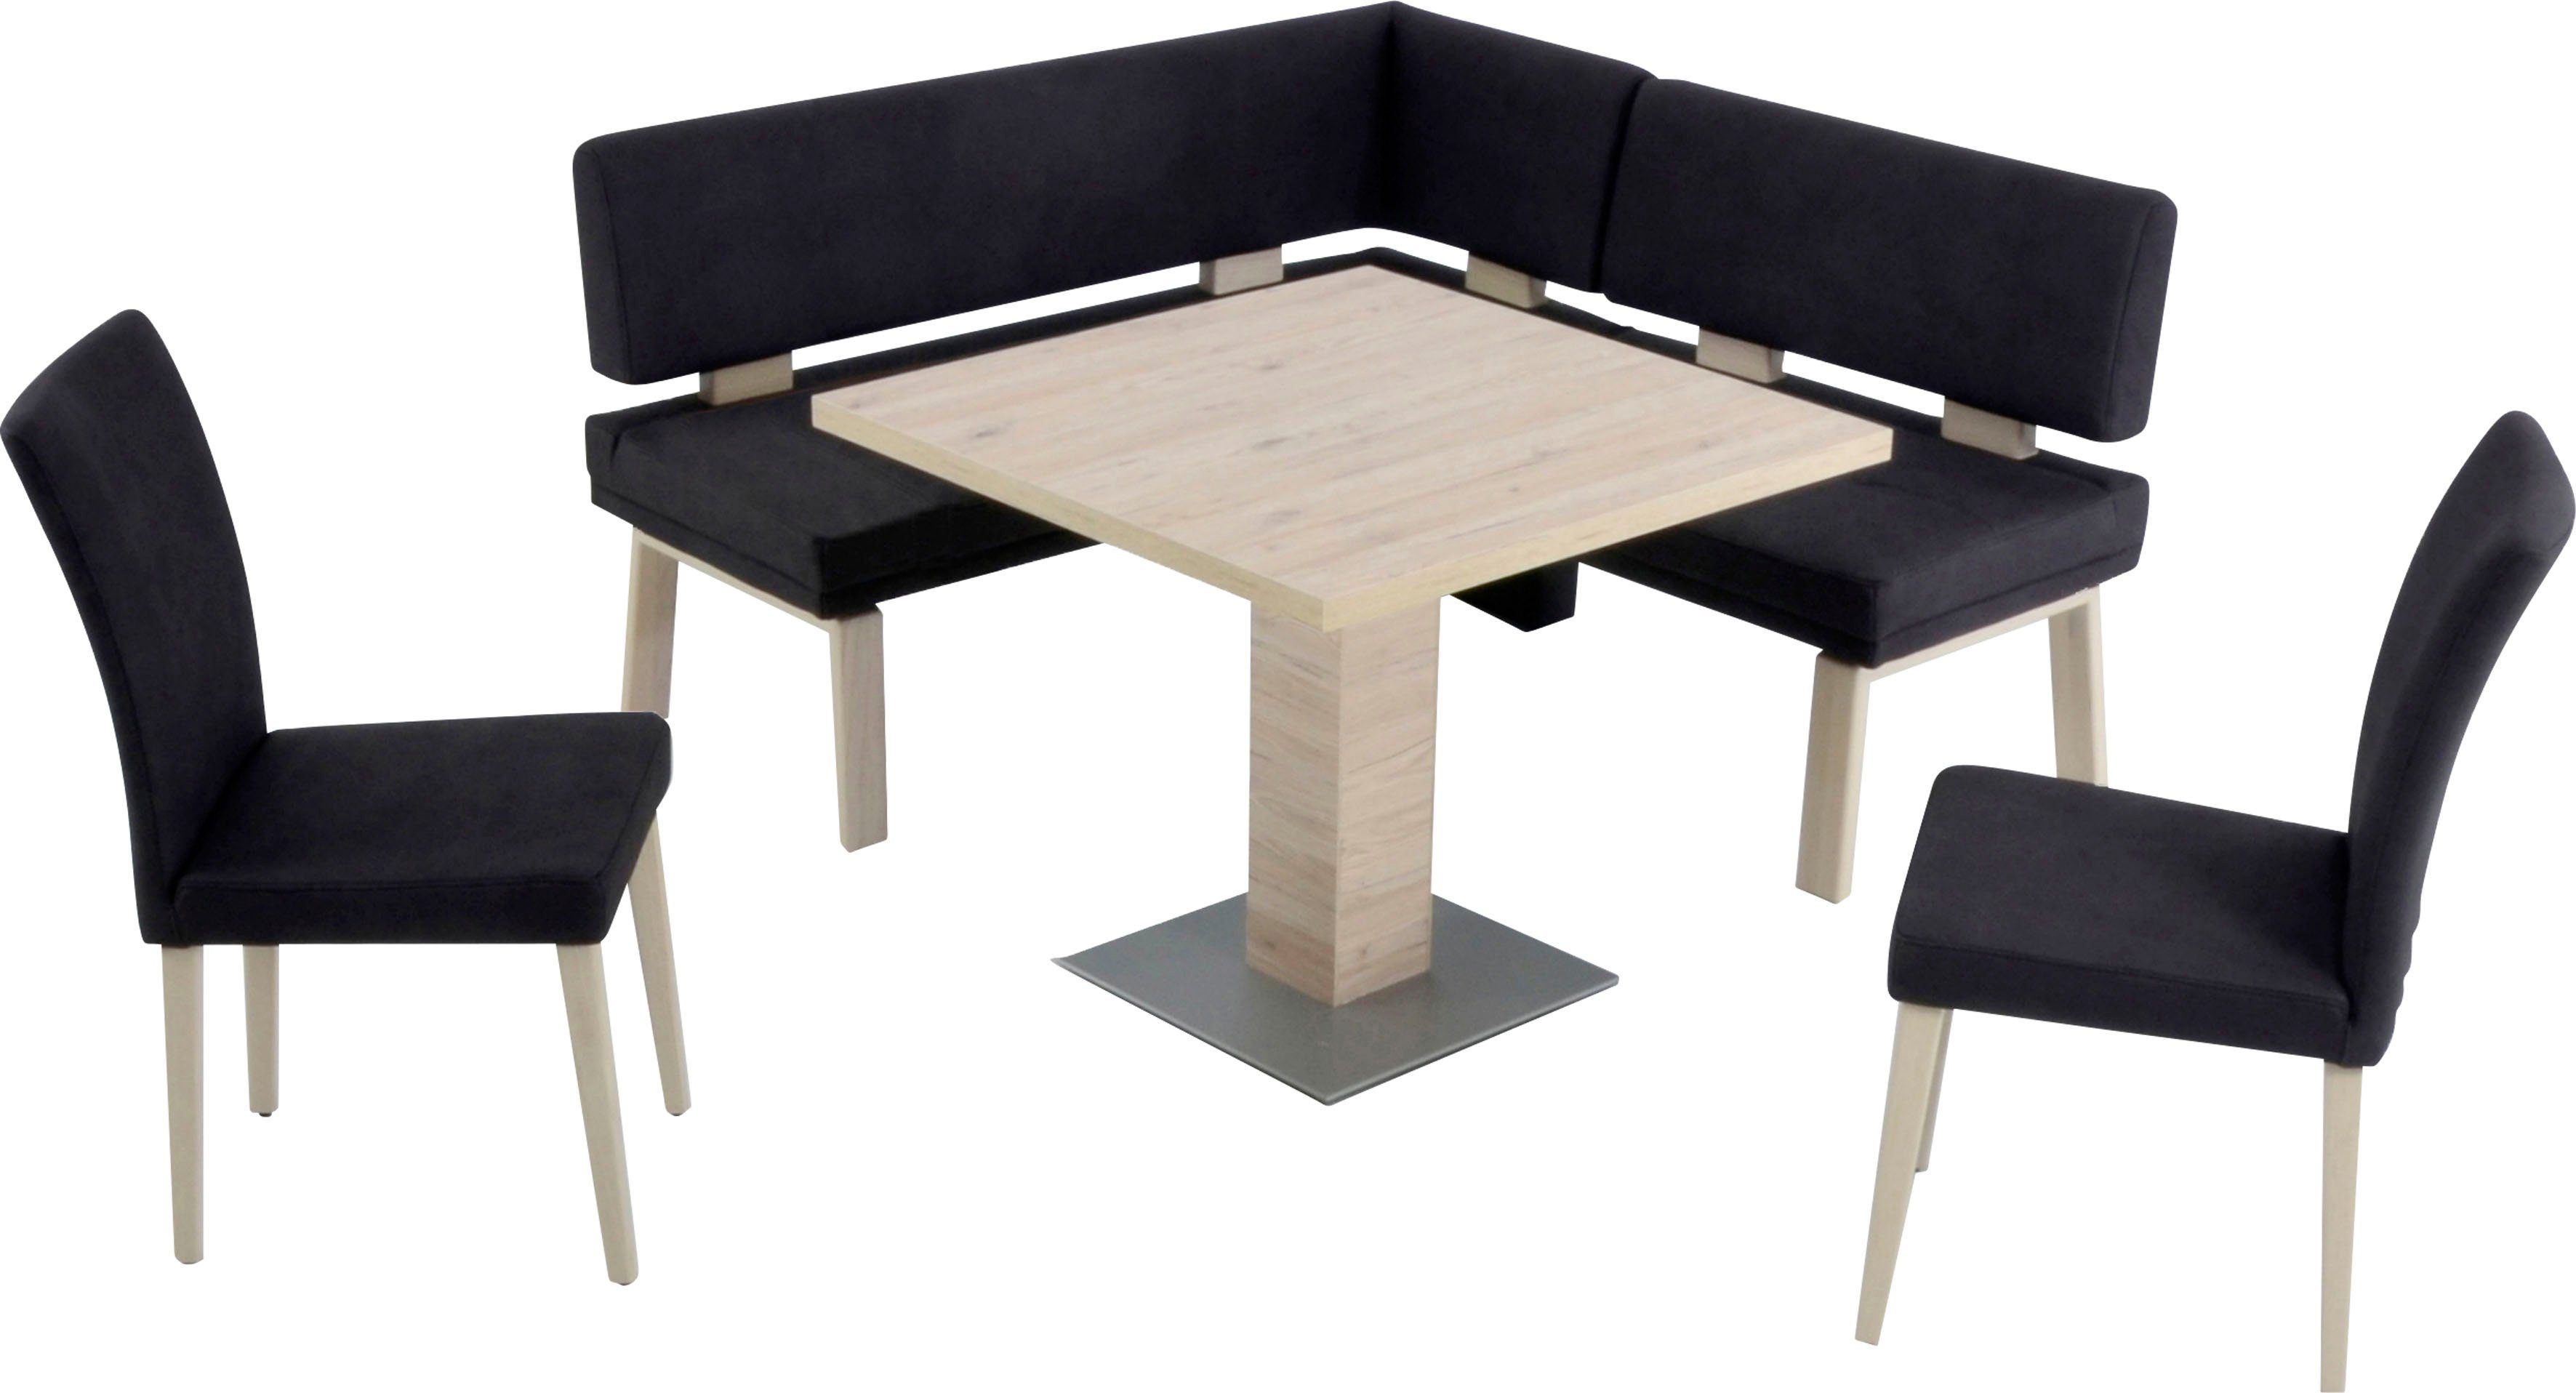 K+W Komfort & Wohnen Eckbankgruppe Santos I, gleichschenklig 157cm, zwei 4-Fußholzstühle und Tisch 90x90cm, Eiche darkbrown